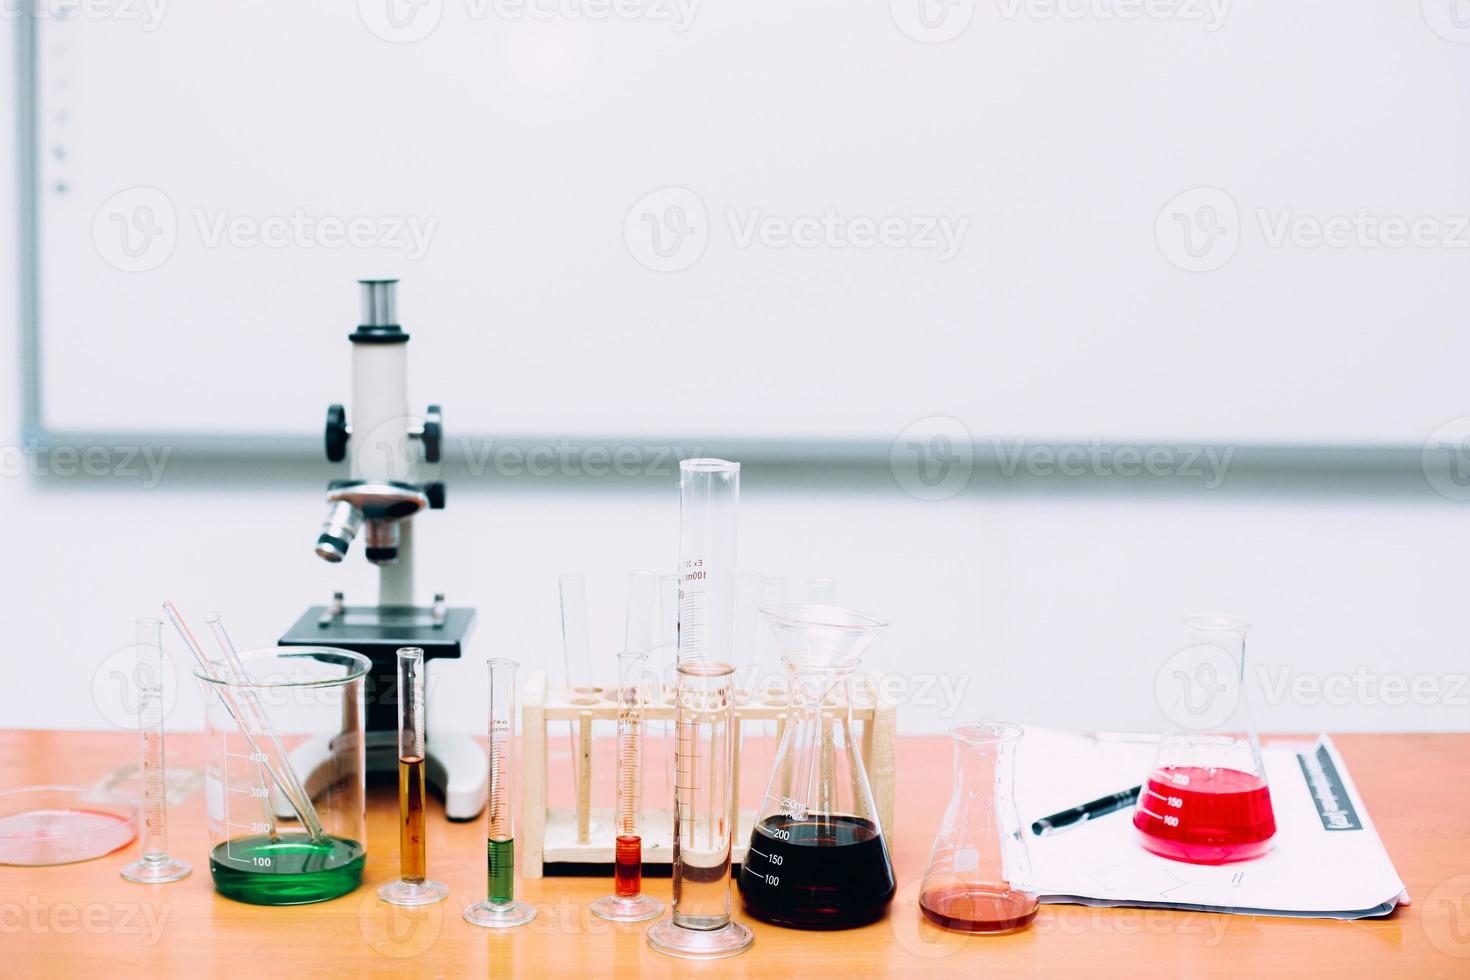 experimentele apparatuur in wetenschappelijk laboratorium. het lab heeft een microscoop, een glazen buis vol kleurrijke chemische stoffen. nationale wetenschapsdag, wereldwetenschapsdag foto